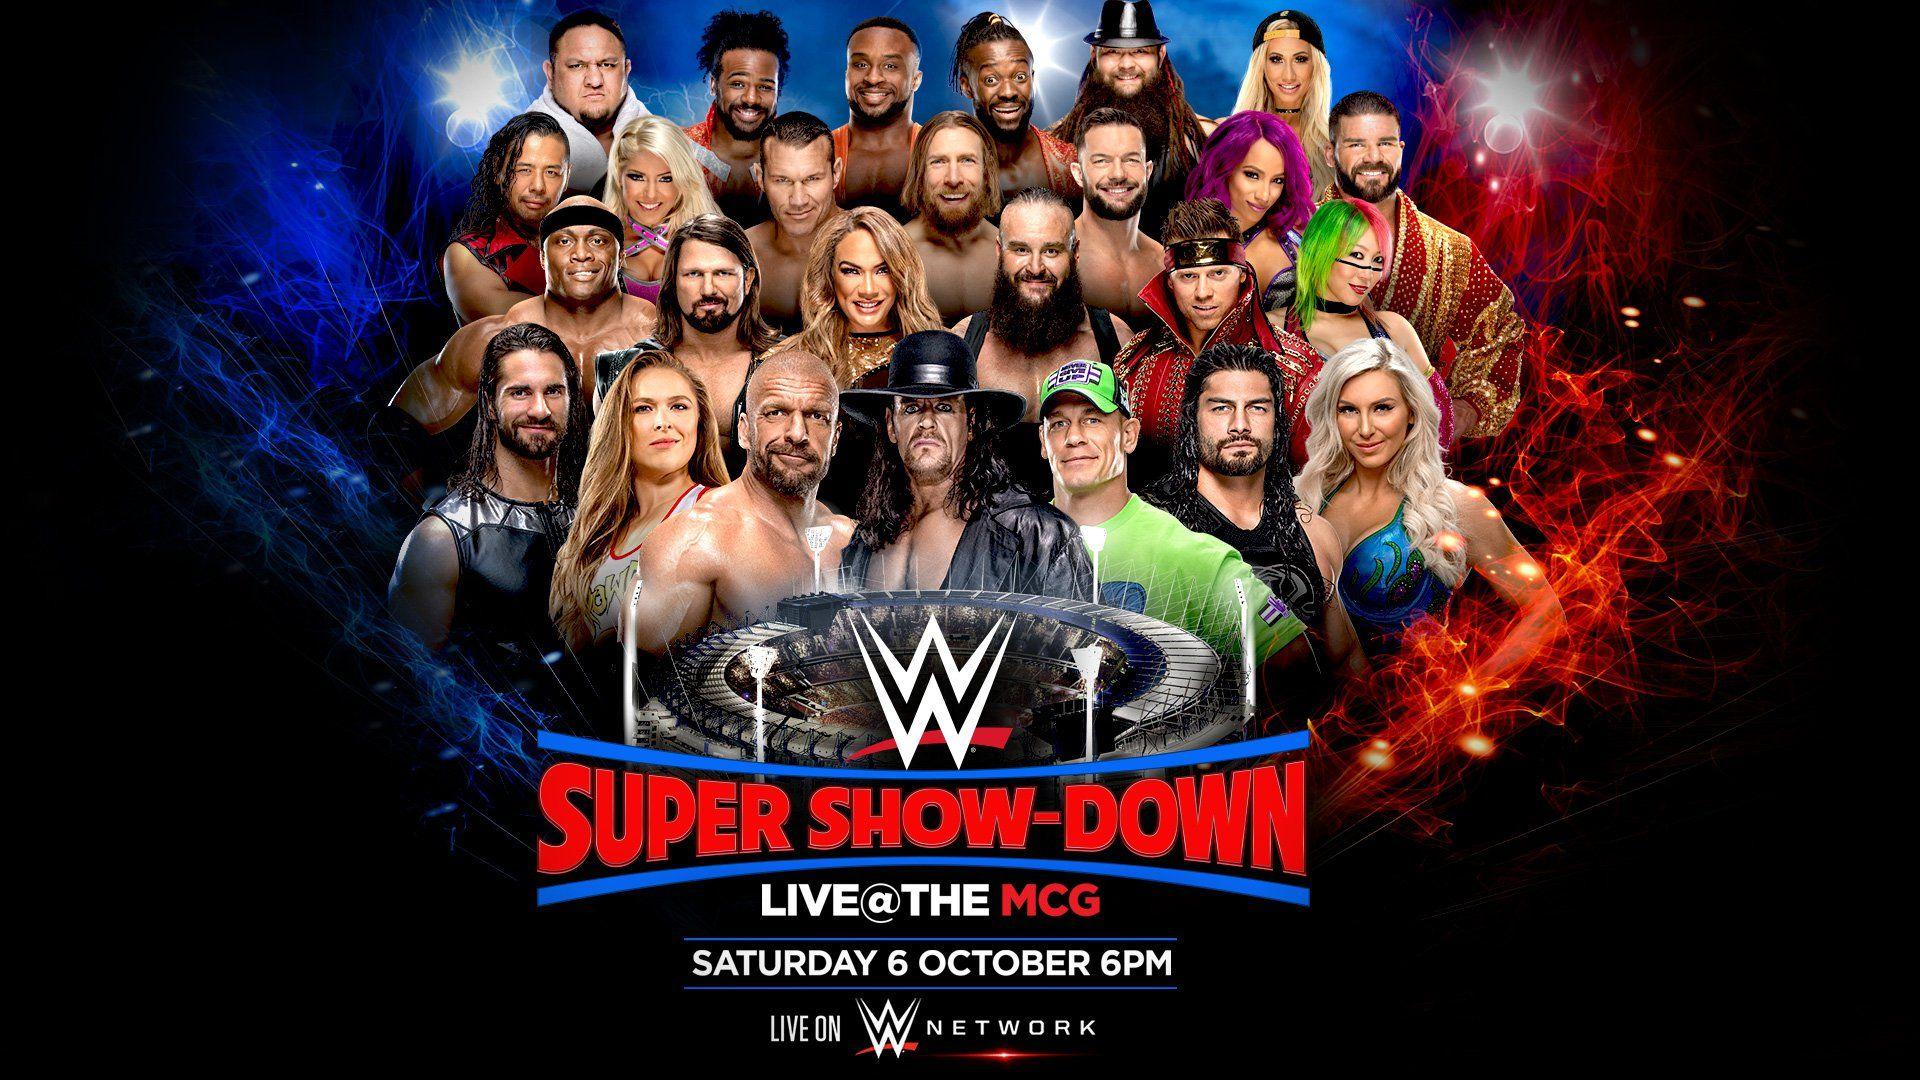 WWE Super Showdown results: Triple H, Undertaker continue rivalry